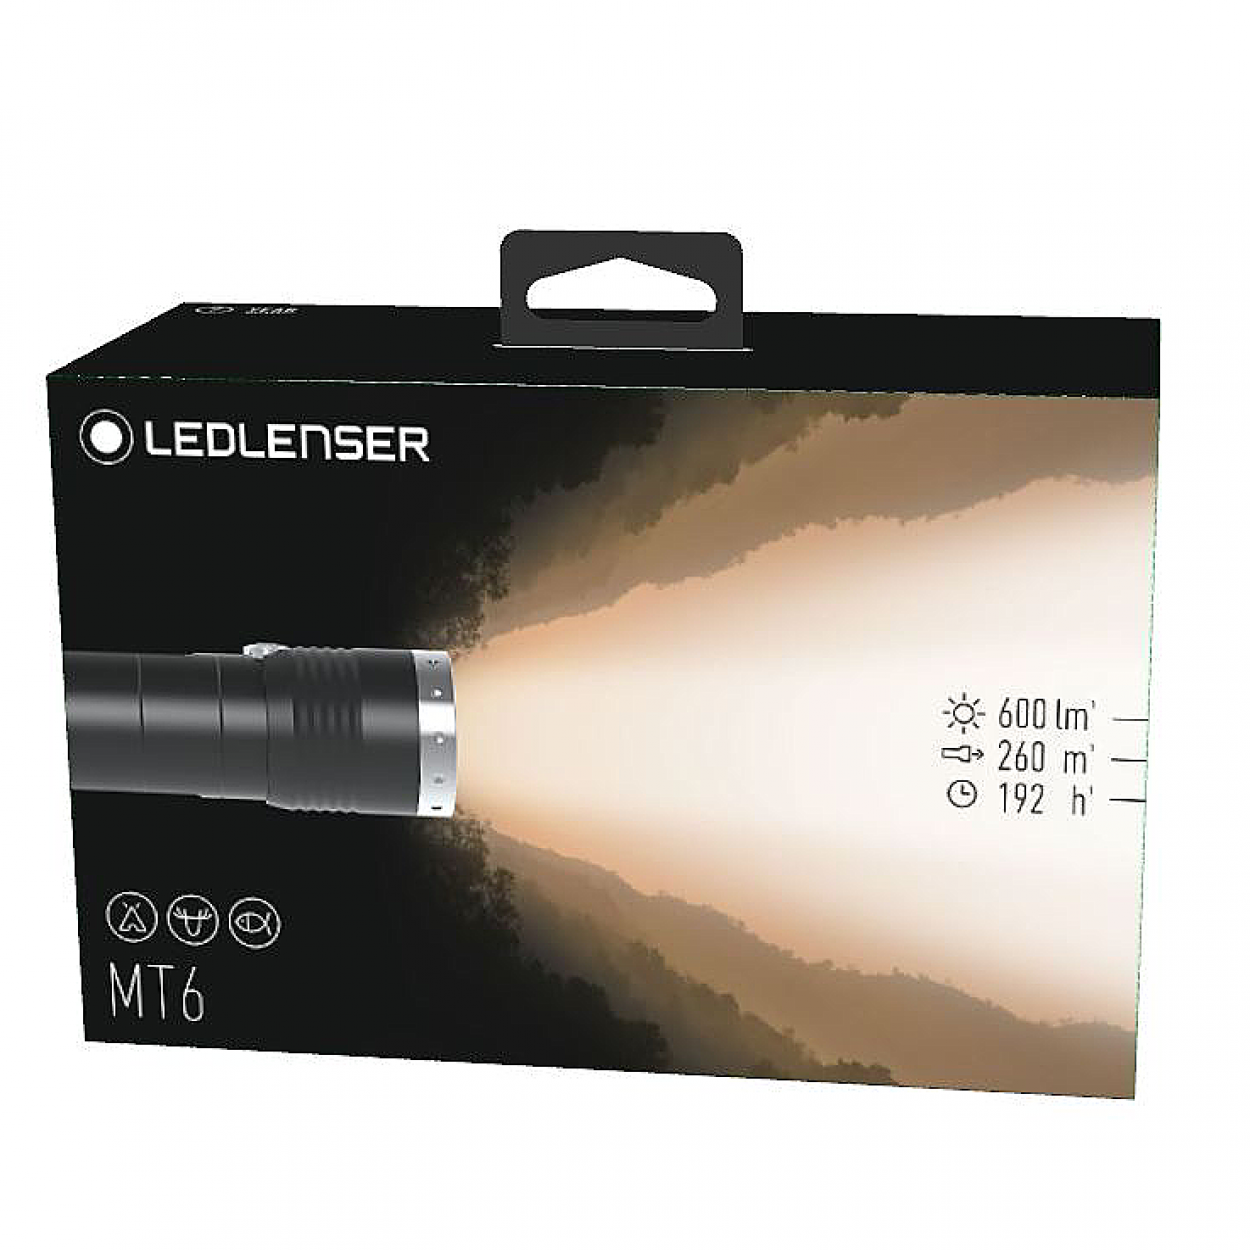 Lanterna LEDLENSER MT6 600lm raza luminoasa 260m